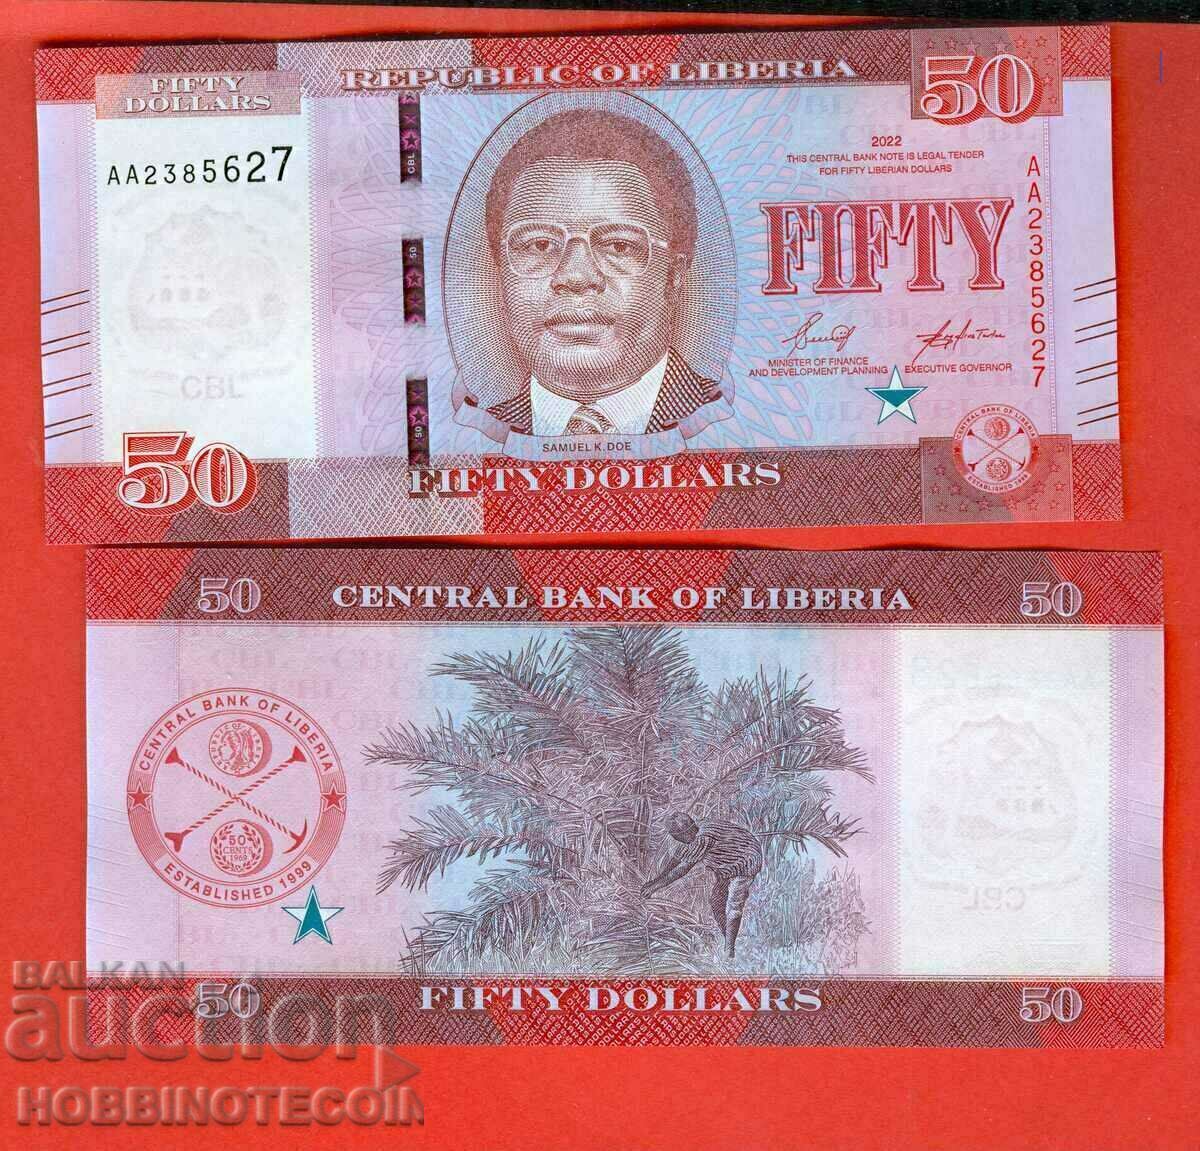 LIBERIA LIBERIA $50 issue issue 2022 NEW UNC